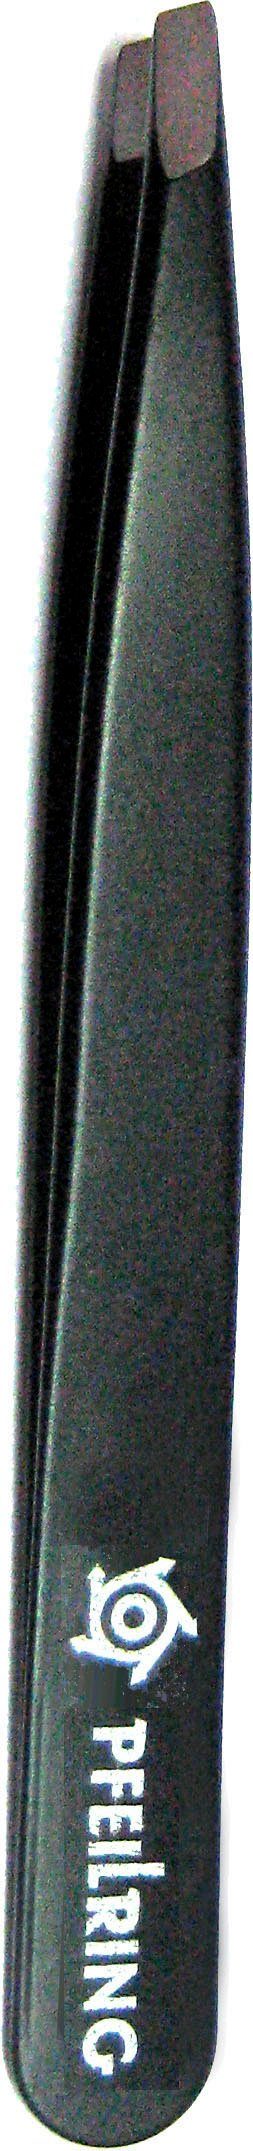 schwarz Pinzette, 9,7cm, rostfrei PFEILRING